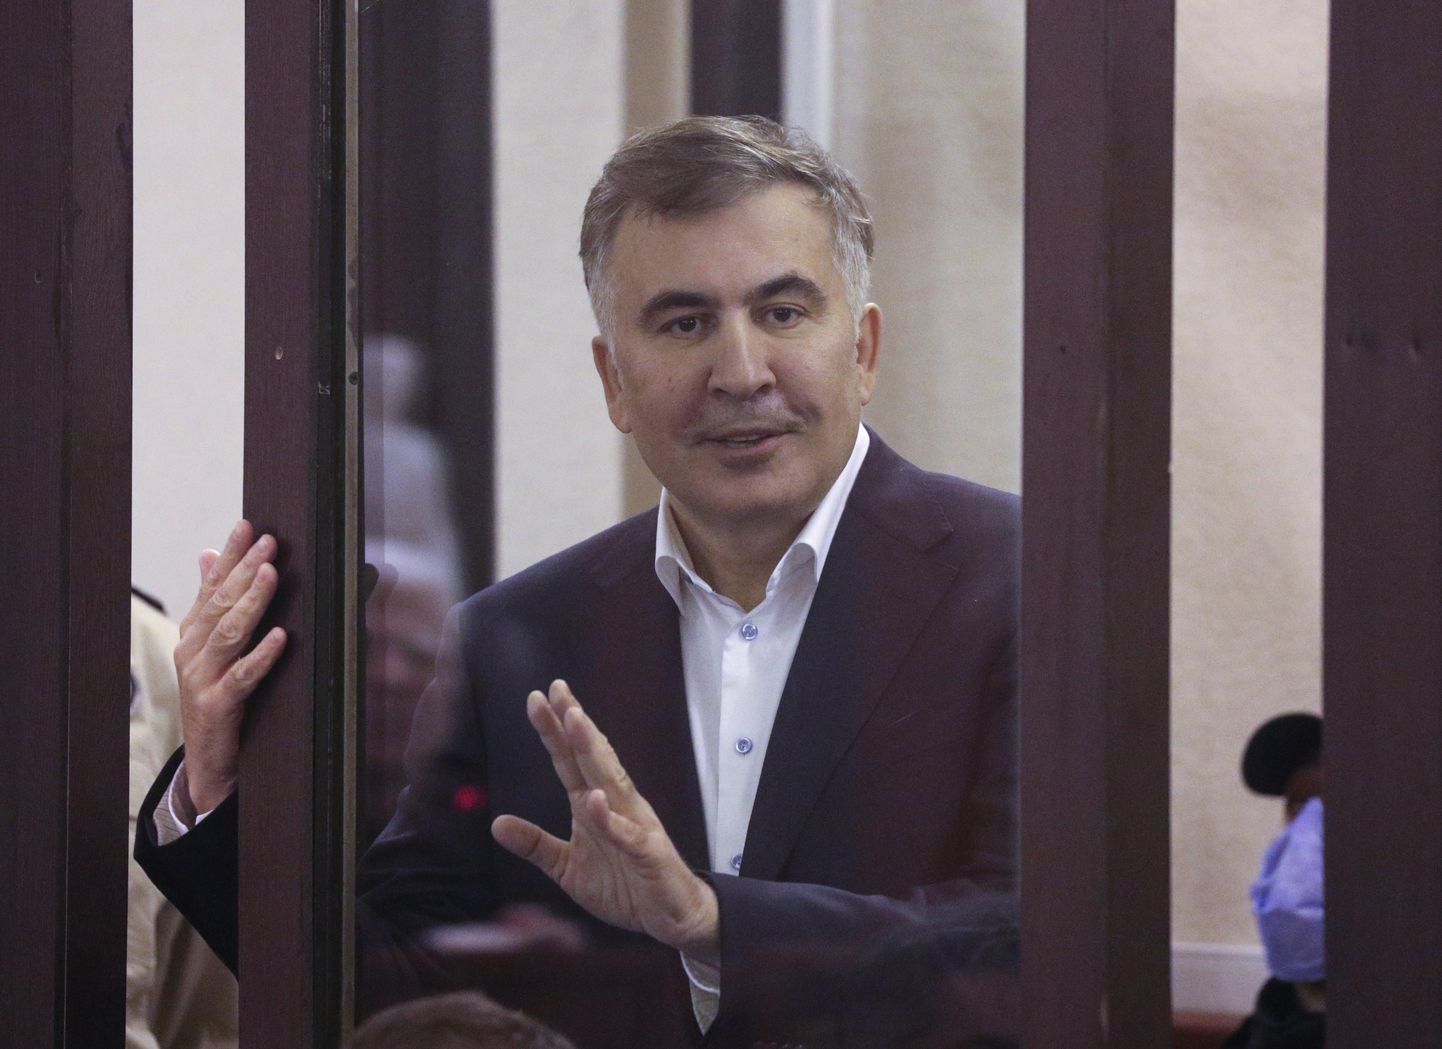 Gruusia vangistatud opositsioonijuhi Mihheil Saakašvili sõnul on tema vastu esitatud süüdistused poliitiliselt motiveeritud.